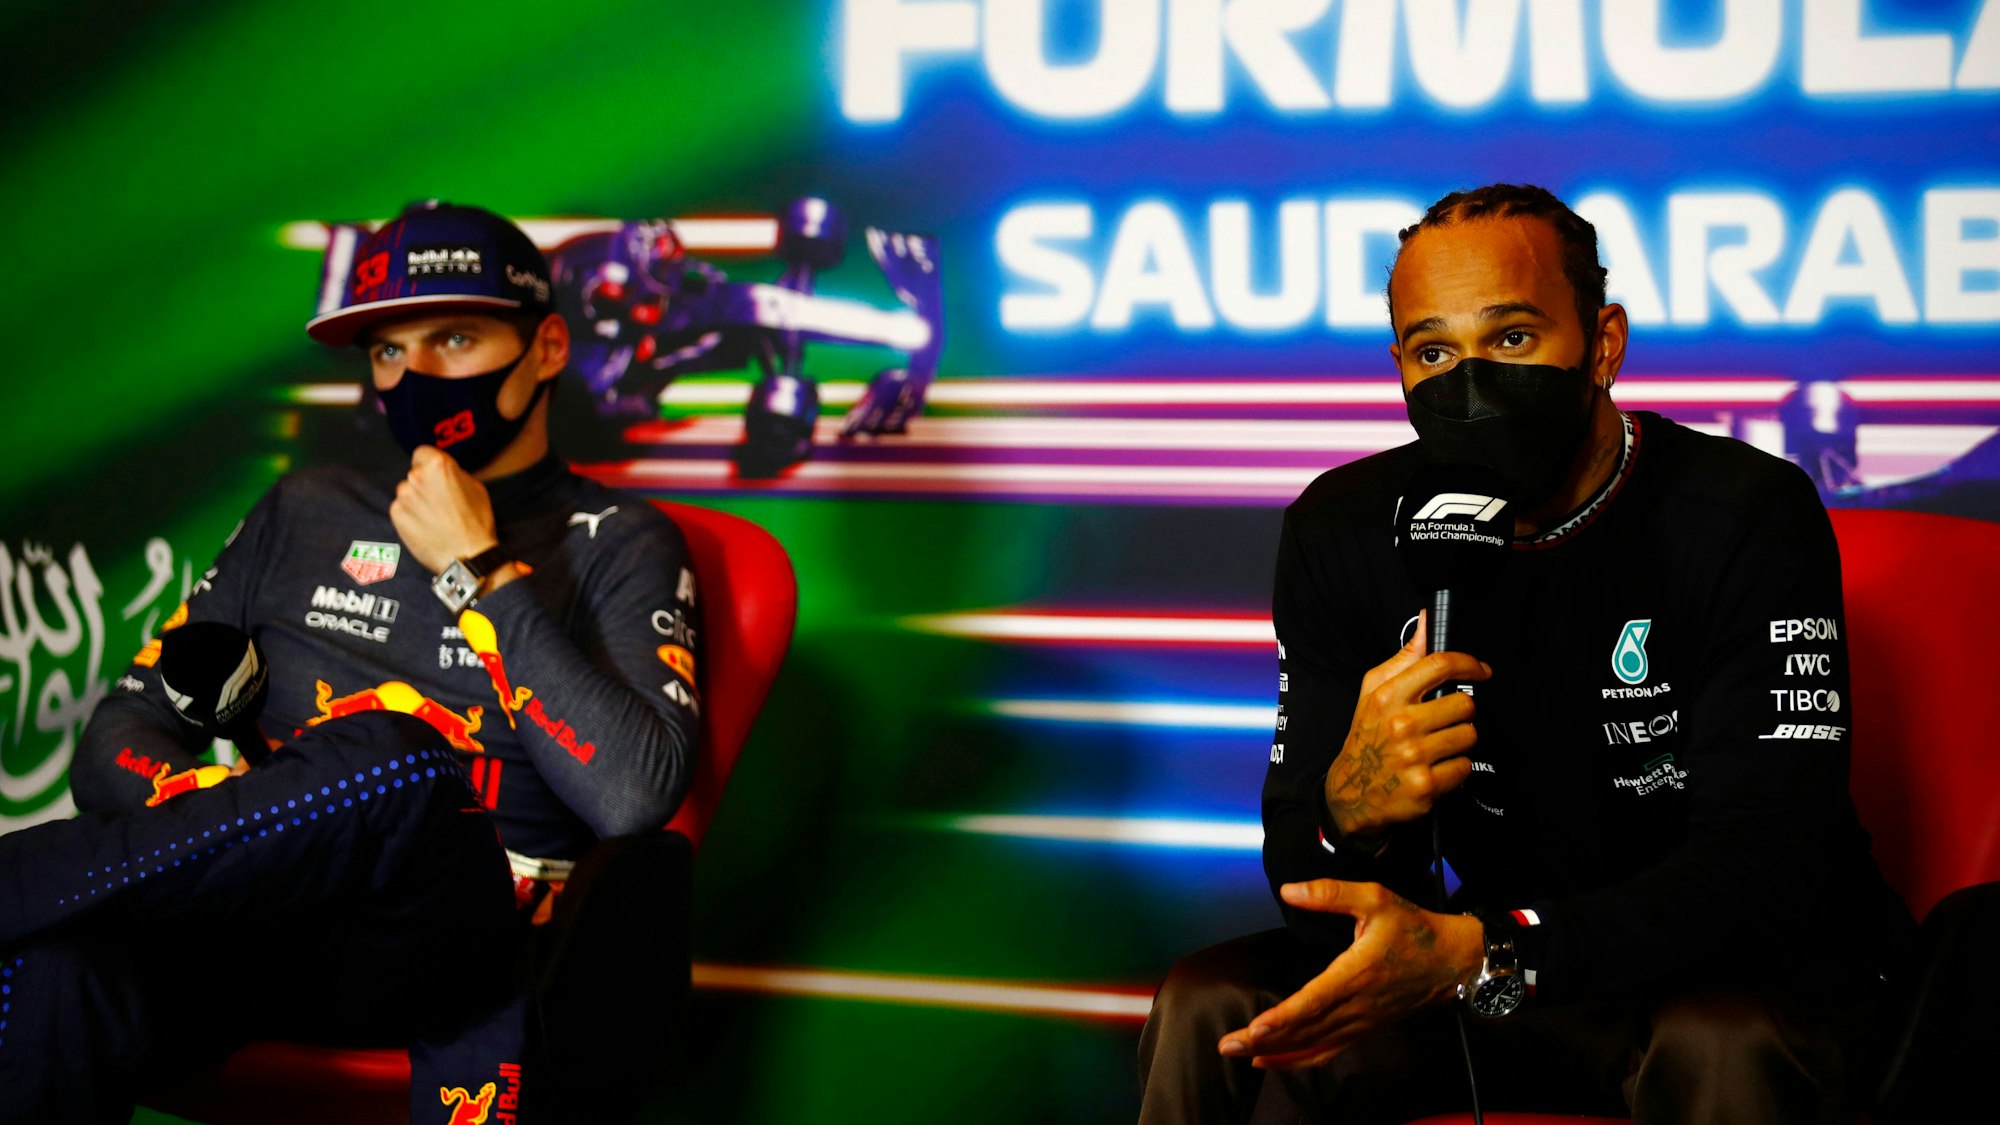 Max Verstappen und Lewis Hamilton bei der Pressekonferenz